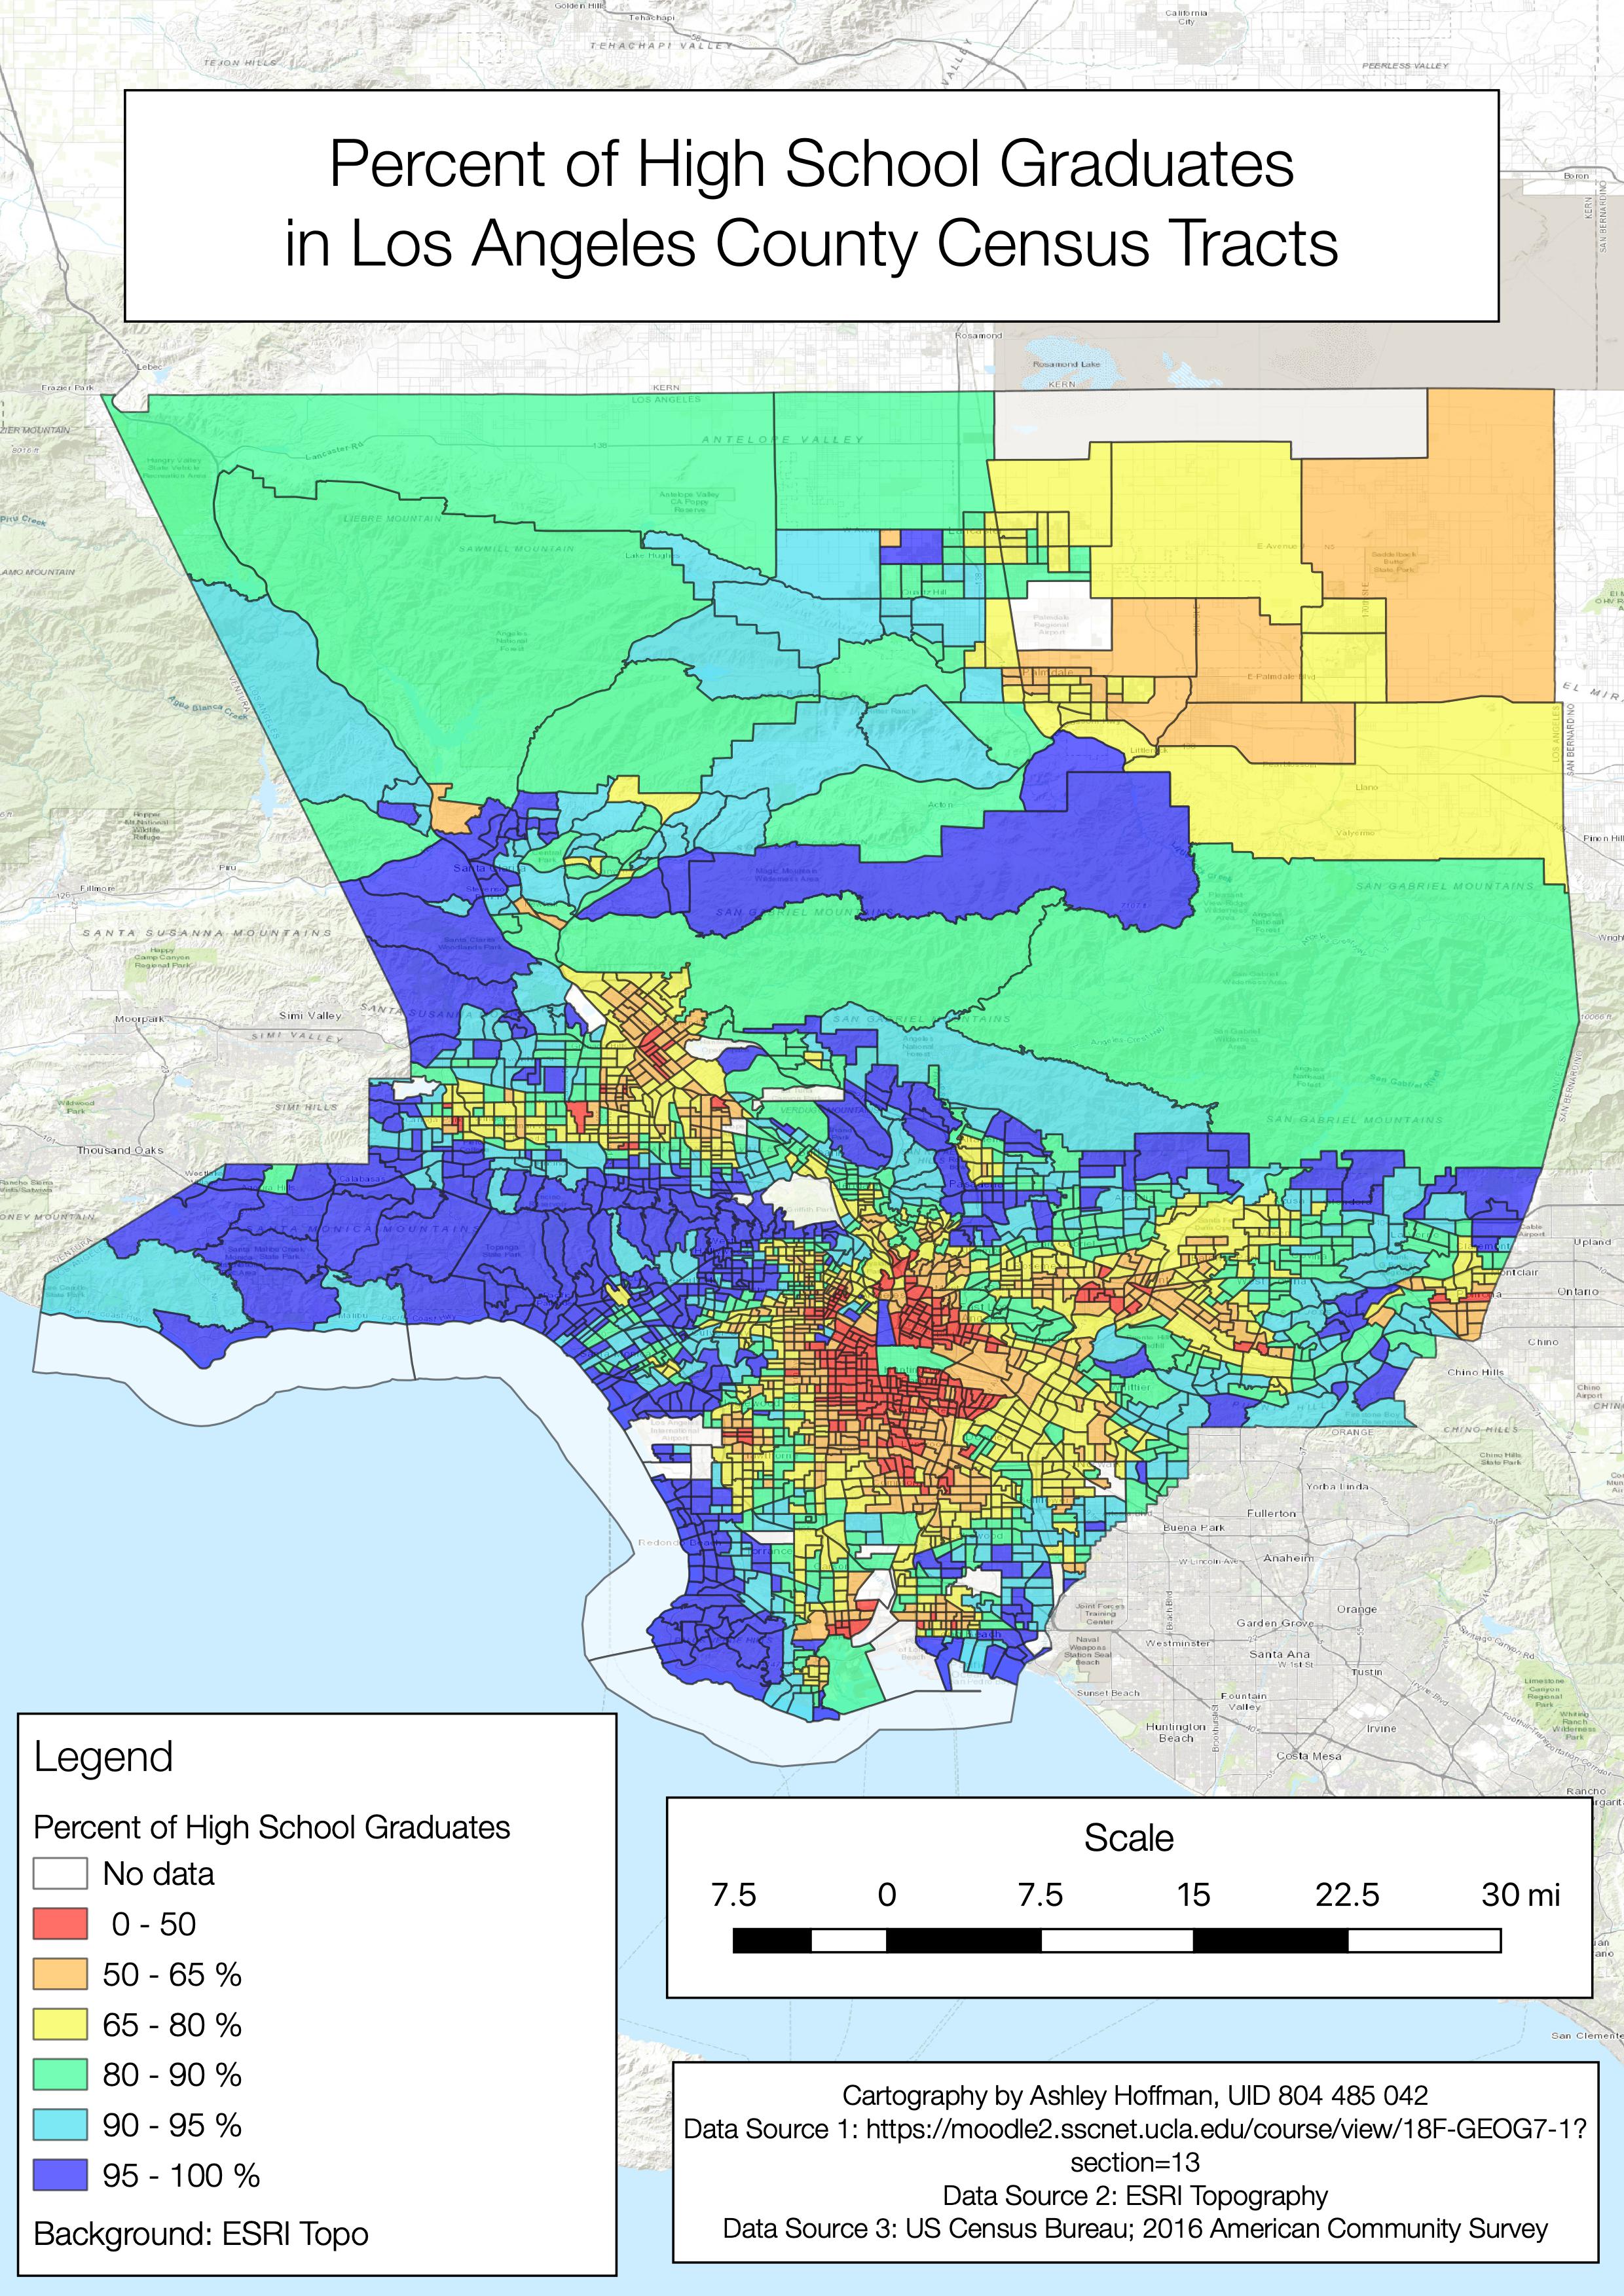 Percent of High School Graduates per Los Angeles Census Tract